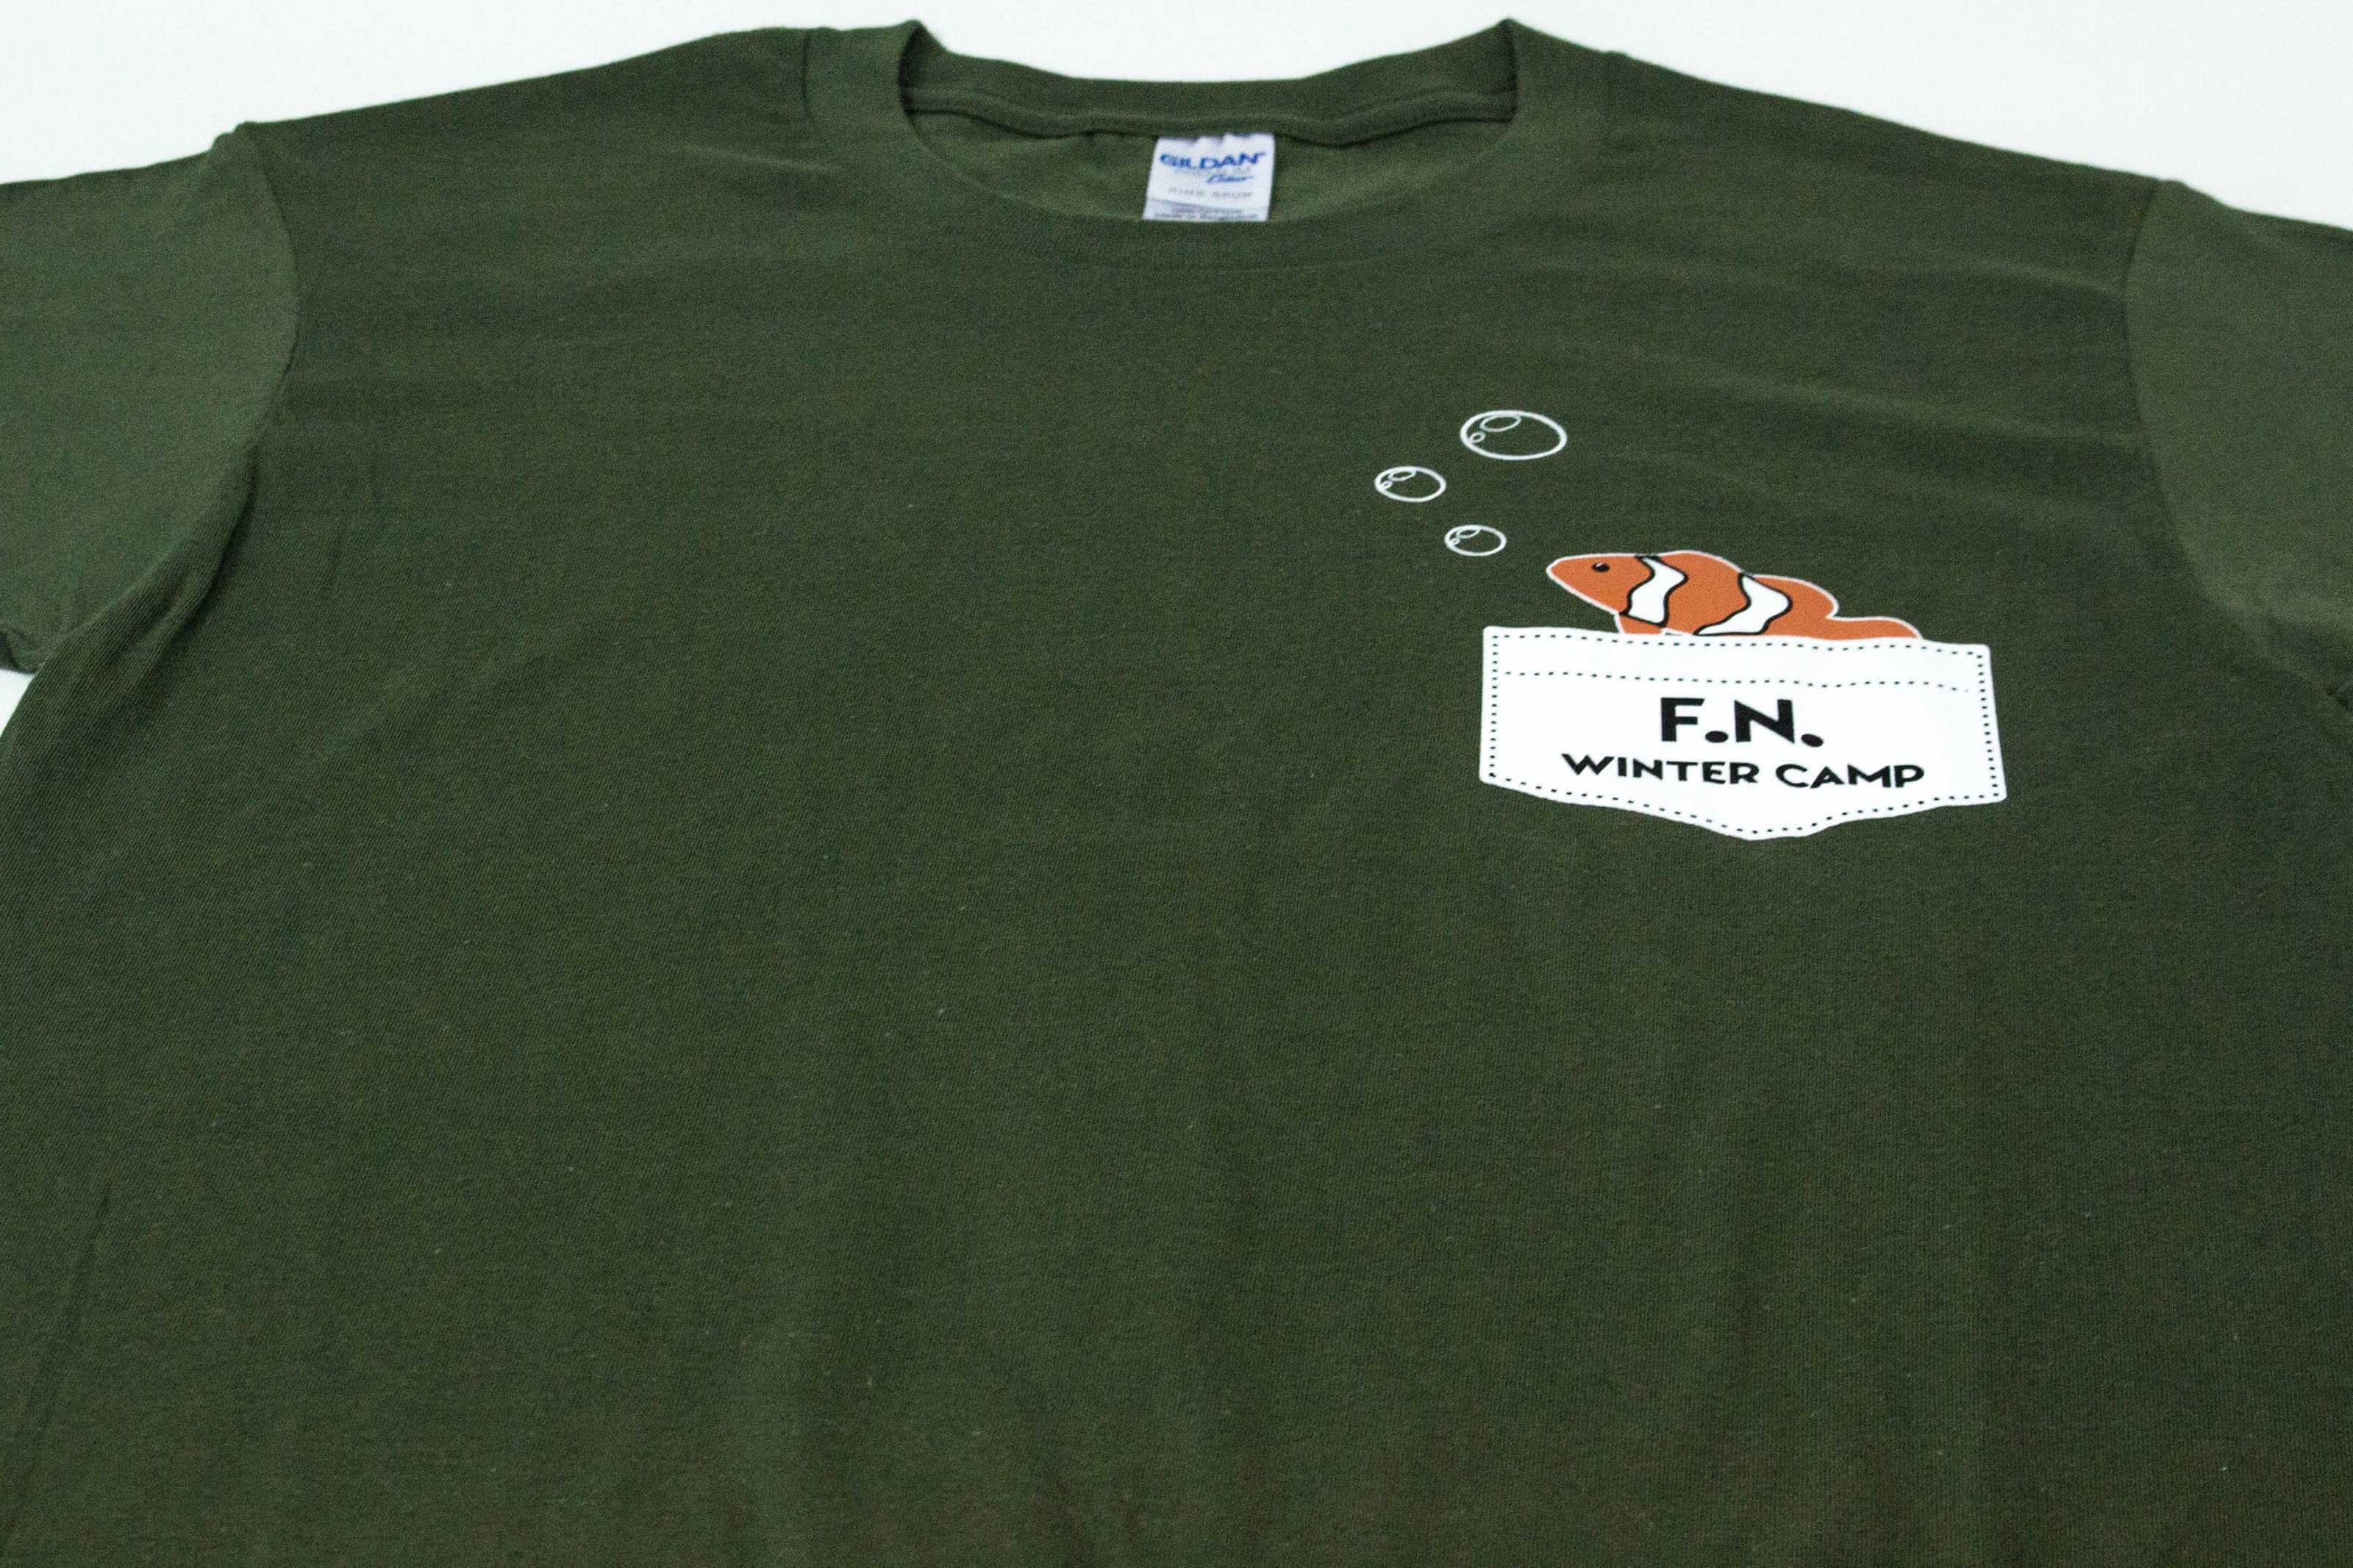 客製化T恤- F.N. WINTER CAMP的第1張圖(客製化公司制服、班服製作、團體服製作等示意或作品圖)